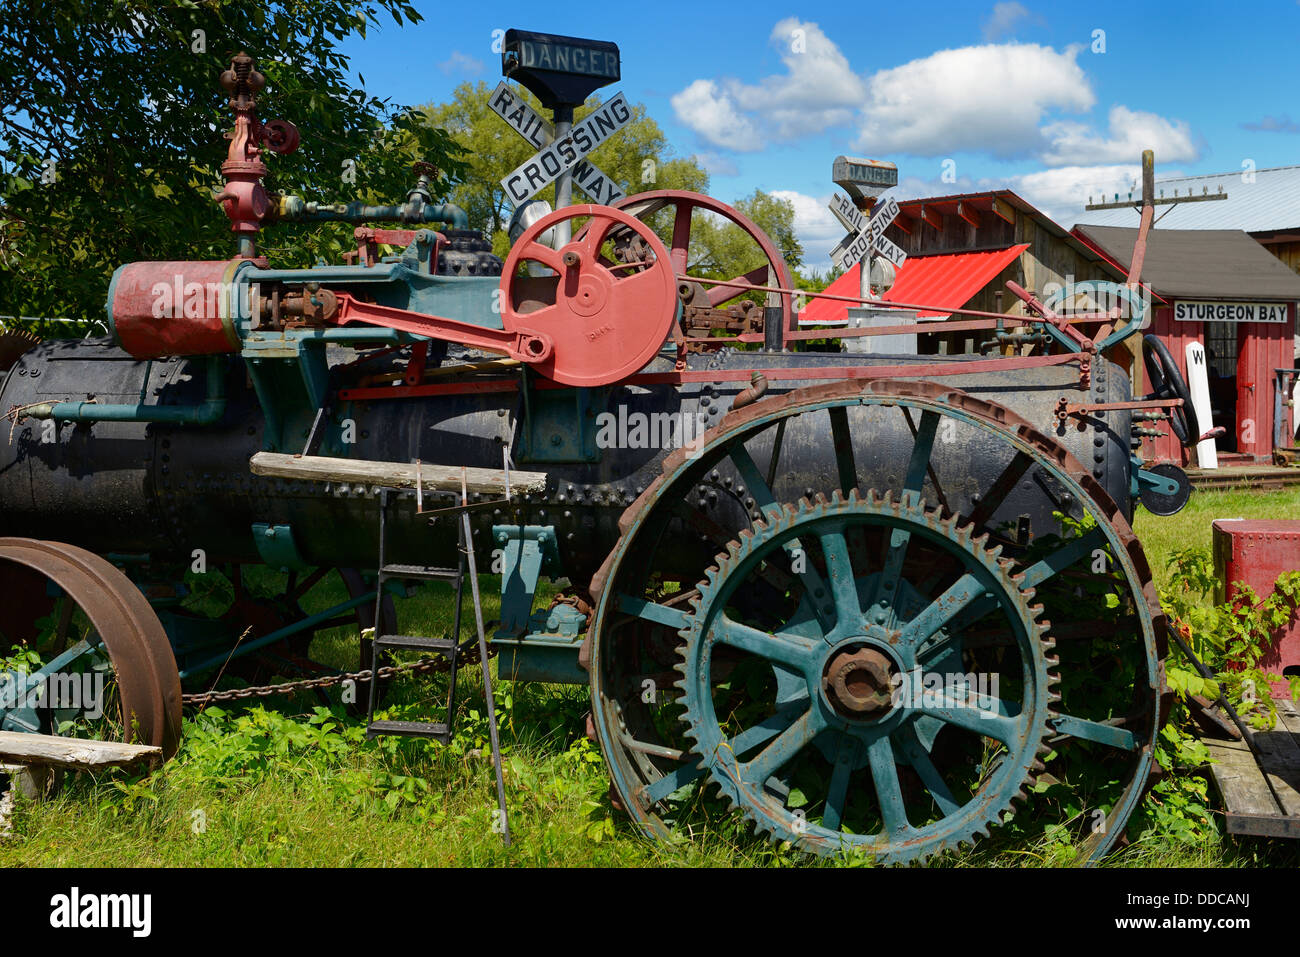 Tracteur à vapeur et Sturgeon Bay Railroad reliques à Coldwater Canadiana Heritage Museum Ontario Canada Banque D'Images